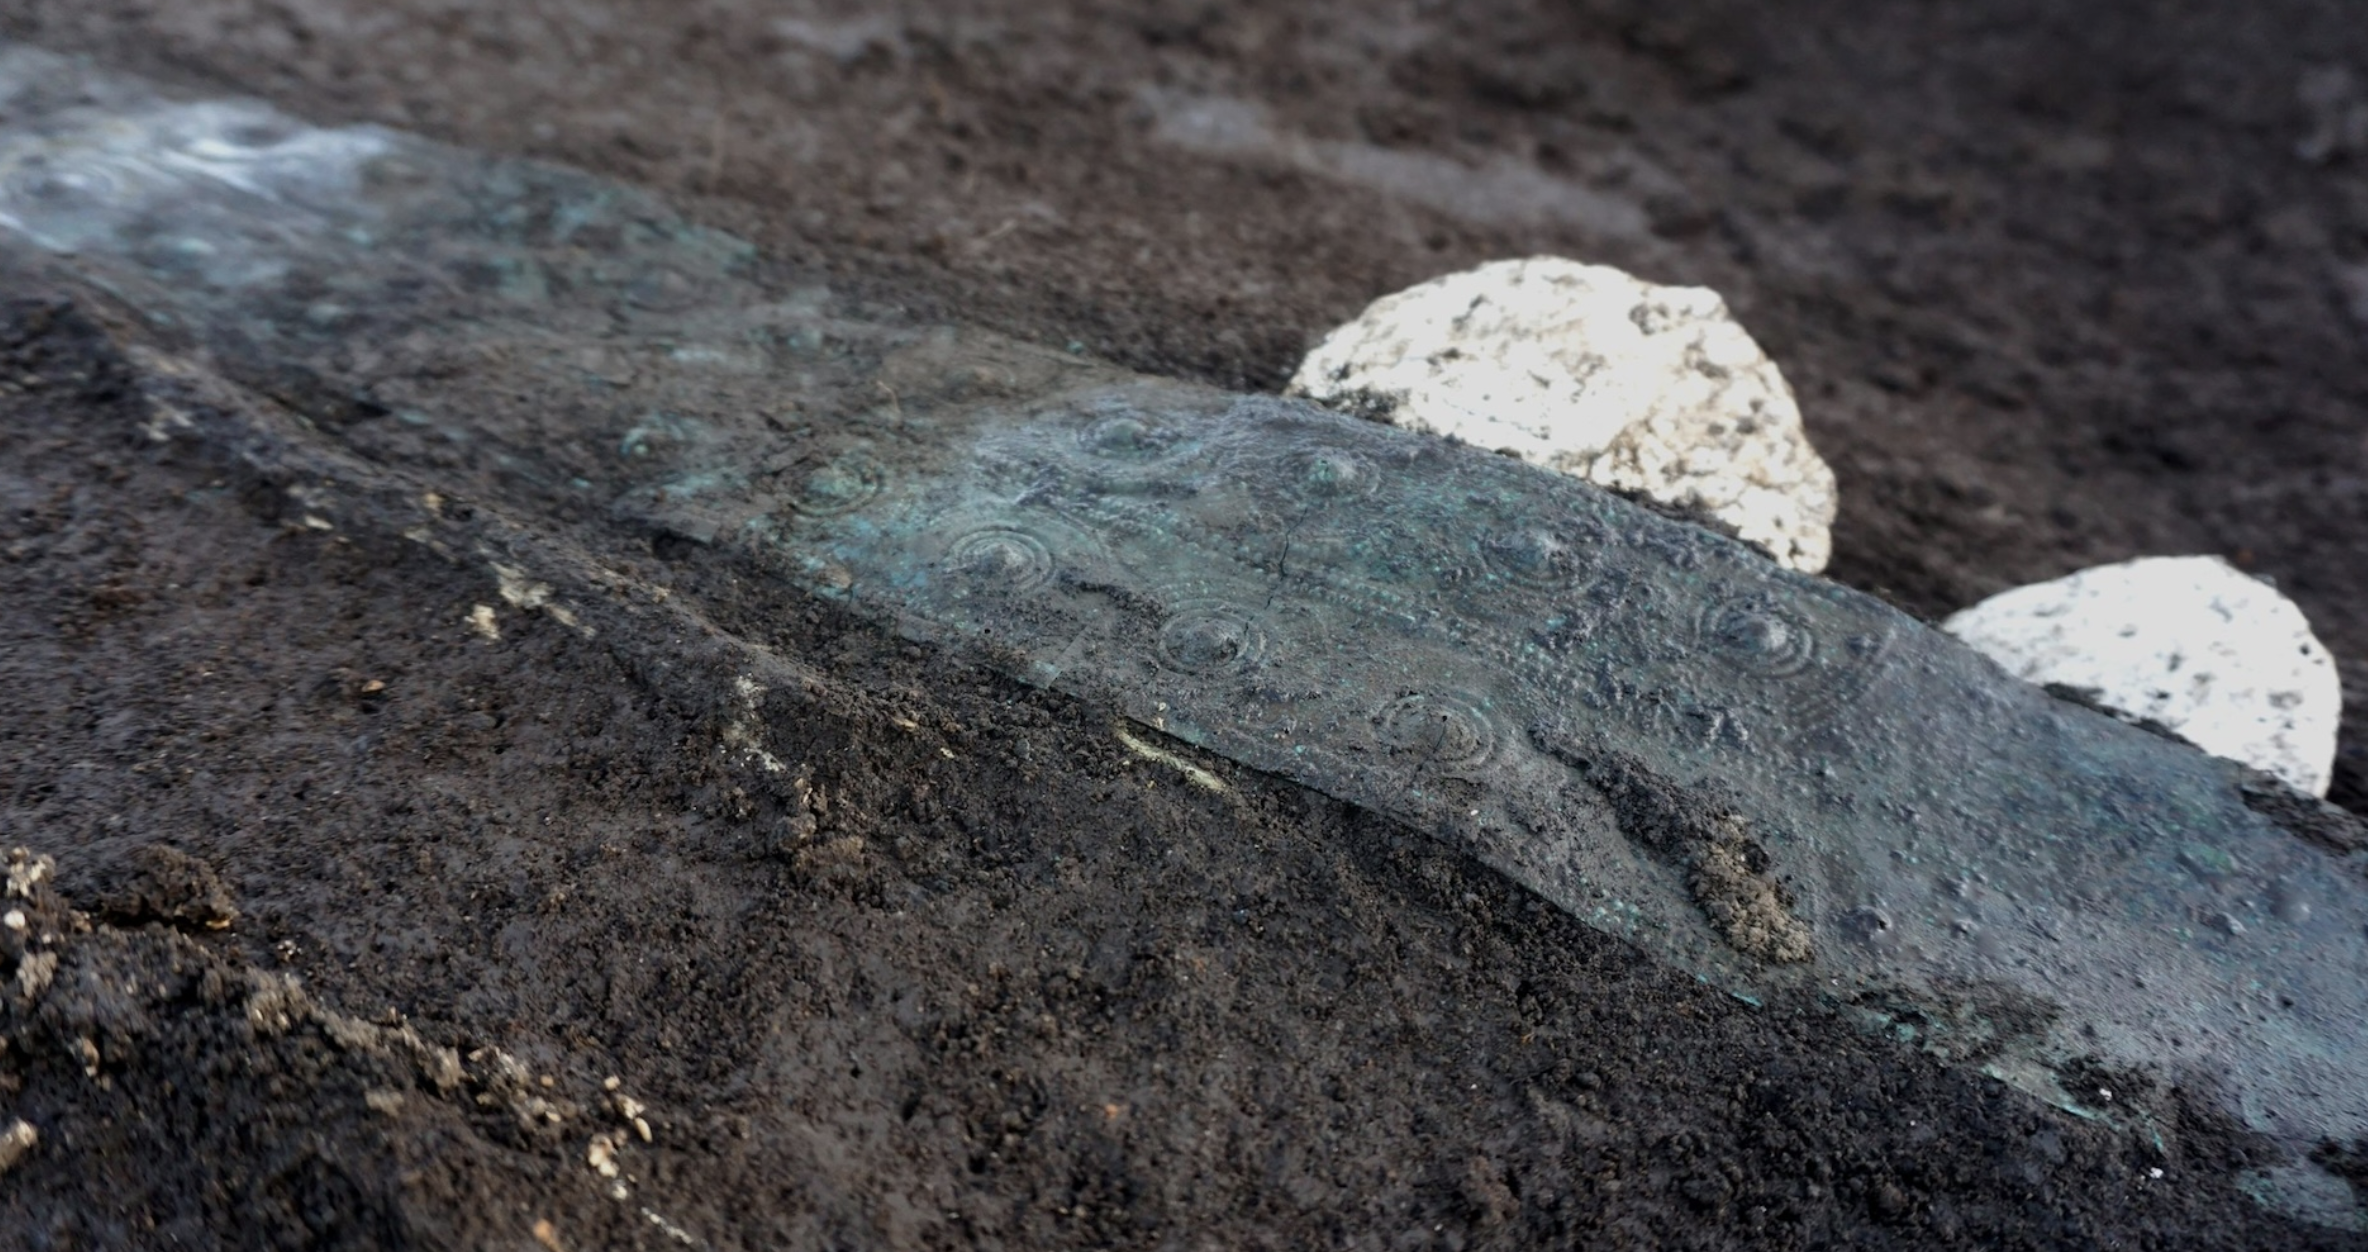 Ovi ukrašeni brončani pojasi pronađeni su među artefaktima koji su kao grobni prilozi stavljeni u neke od grobnica. (Izvor slike: Ministarstvo kulture Italije/Terna).